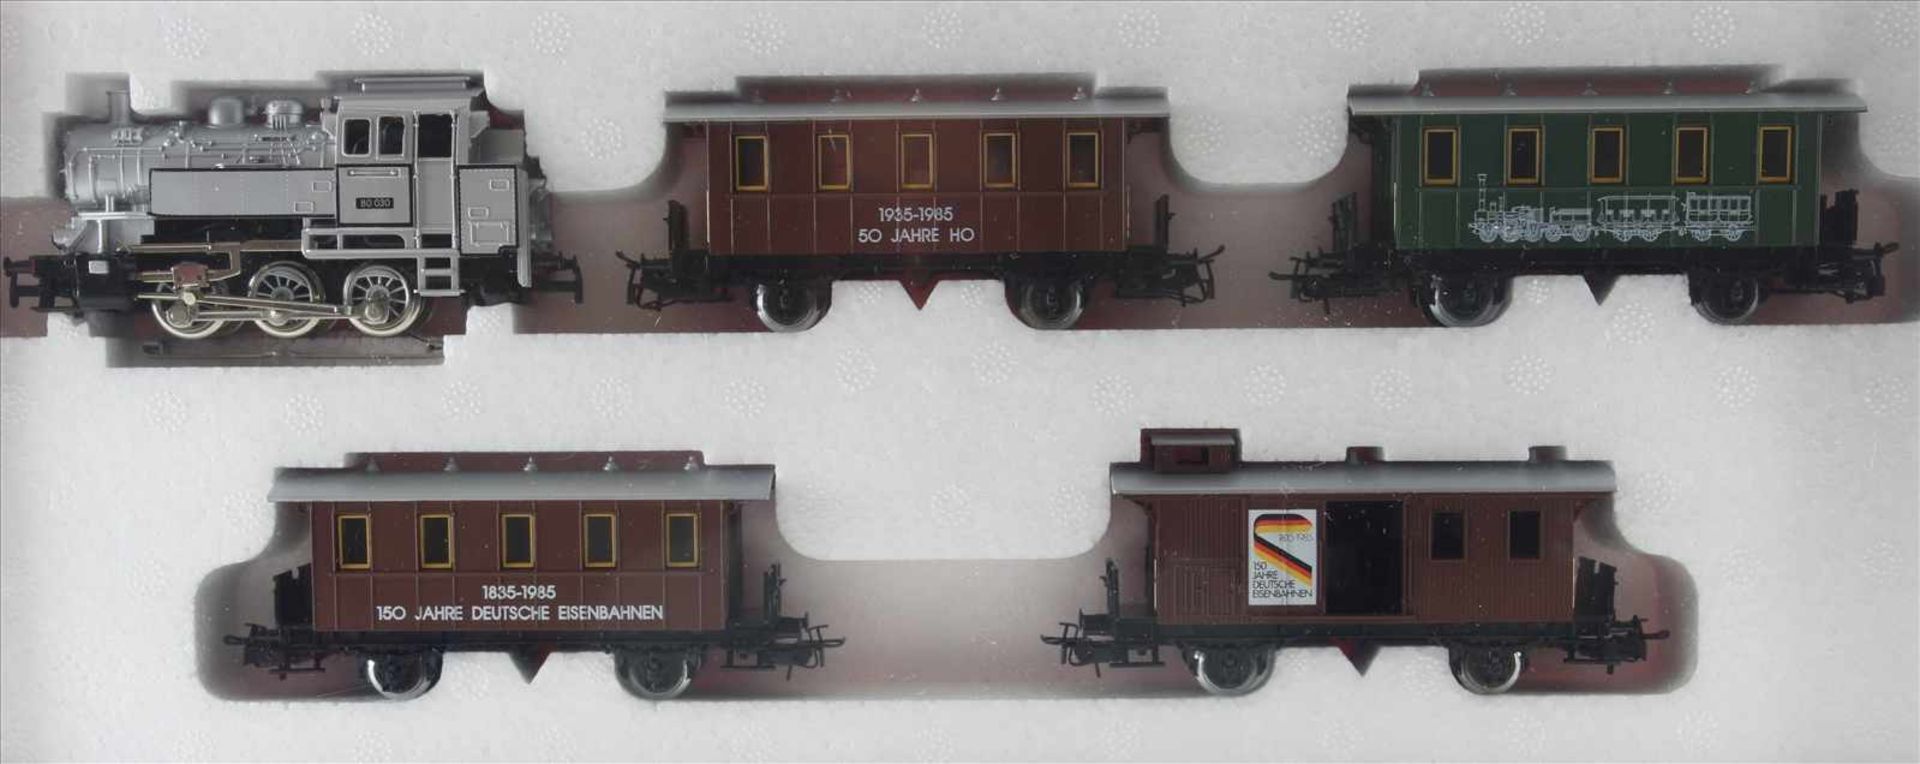 Primex H0 2750Zug-Set. Jubiläumszug 150 Jahre Deutsche Eisenbahn. Guter Zustand, wie abgebildet, aus - Bild 2 aus 2